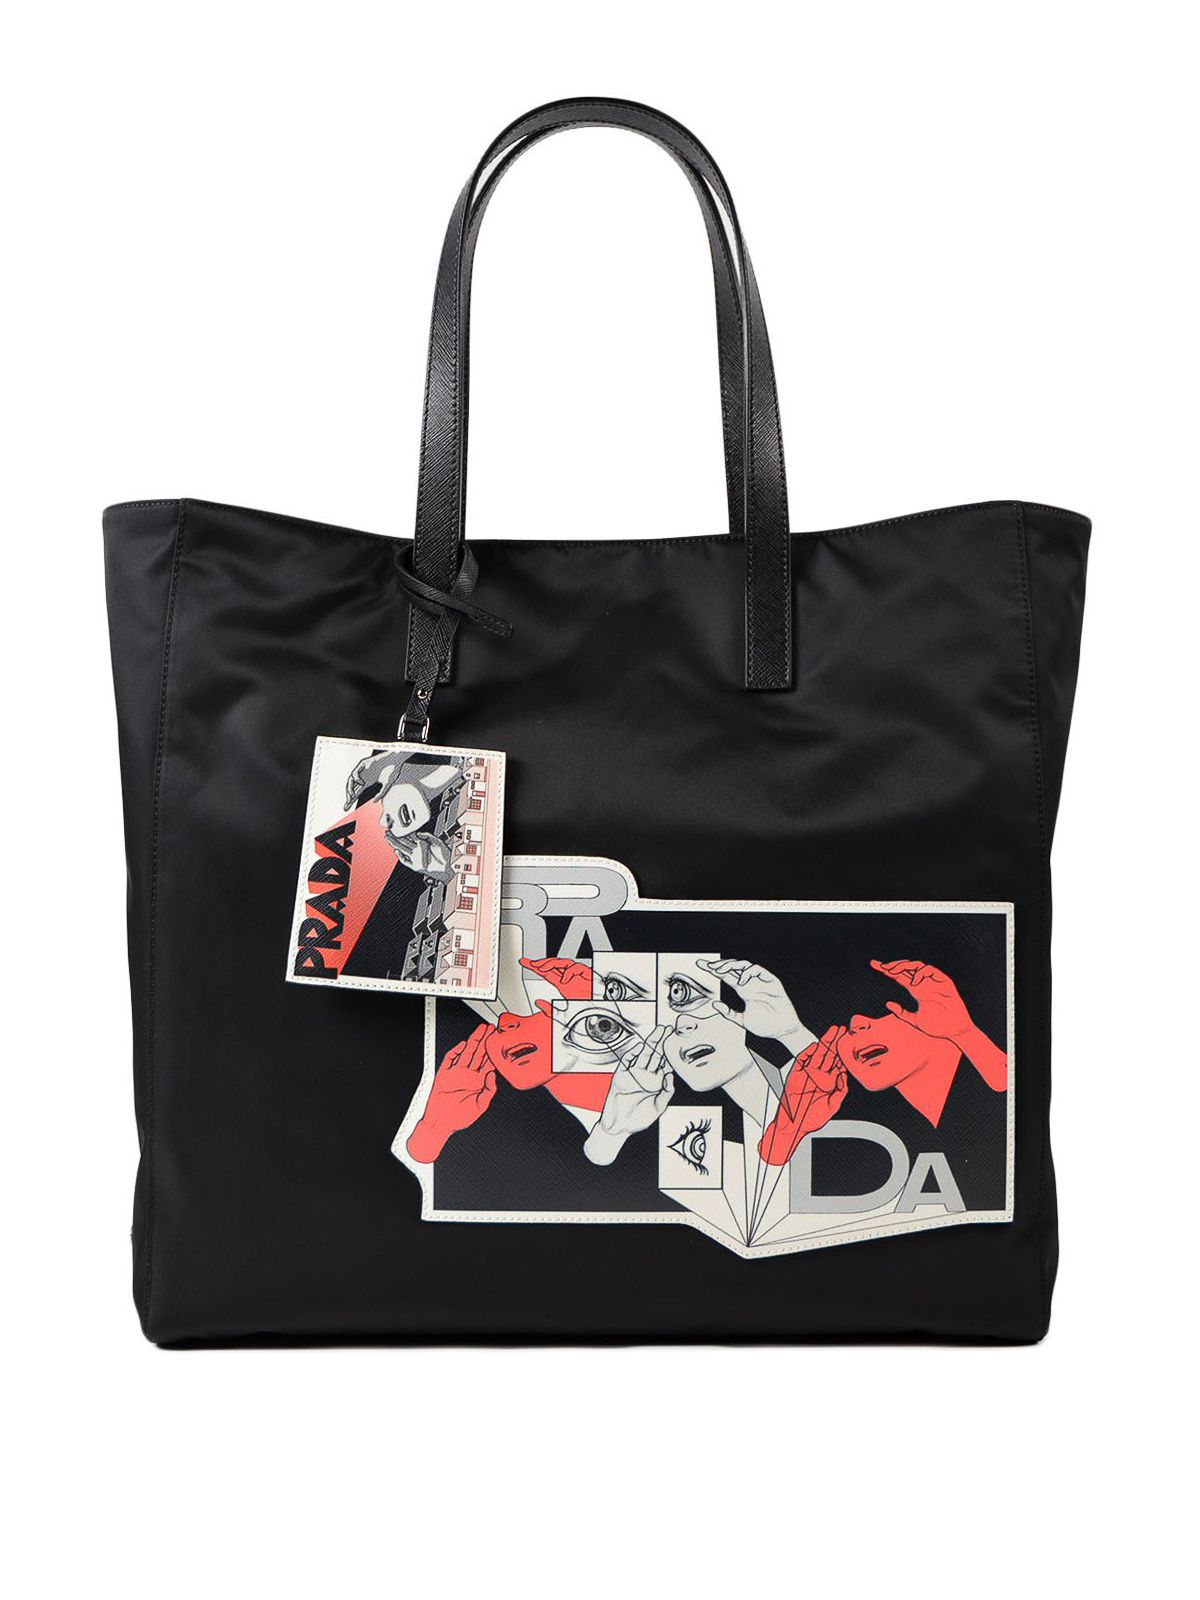 Totes bags Prada - Saffiano Comics patch nylon bag - 2VG0192BQVVO2O002